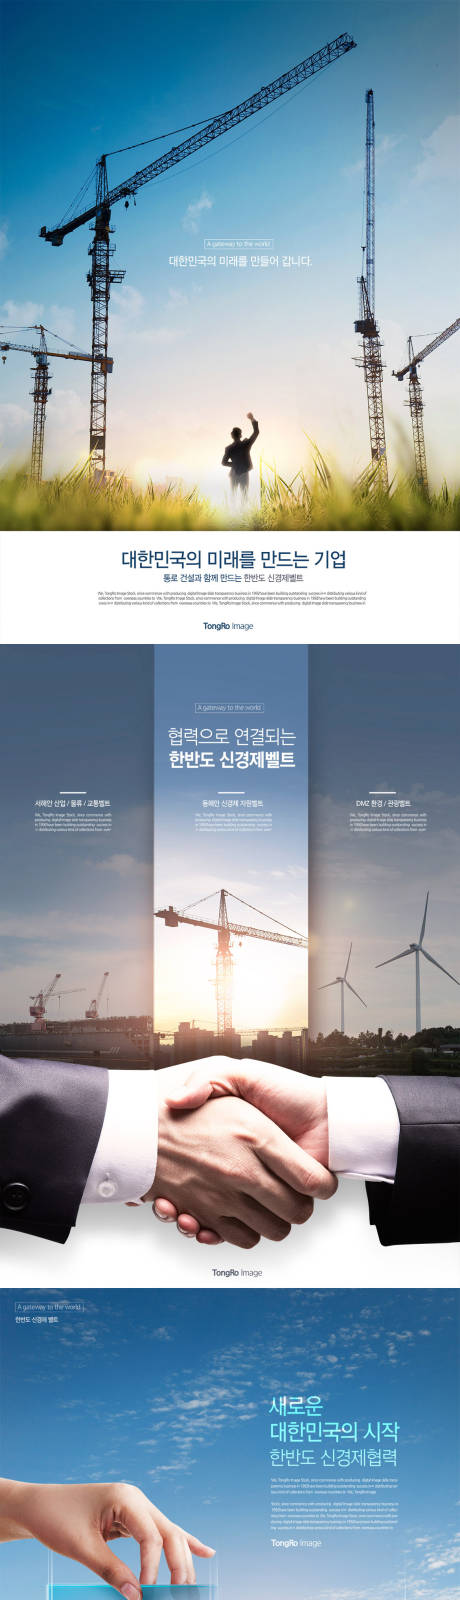 韩国路桥塔吊风车工程建设合作海报